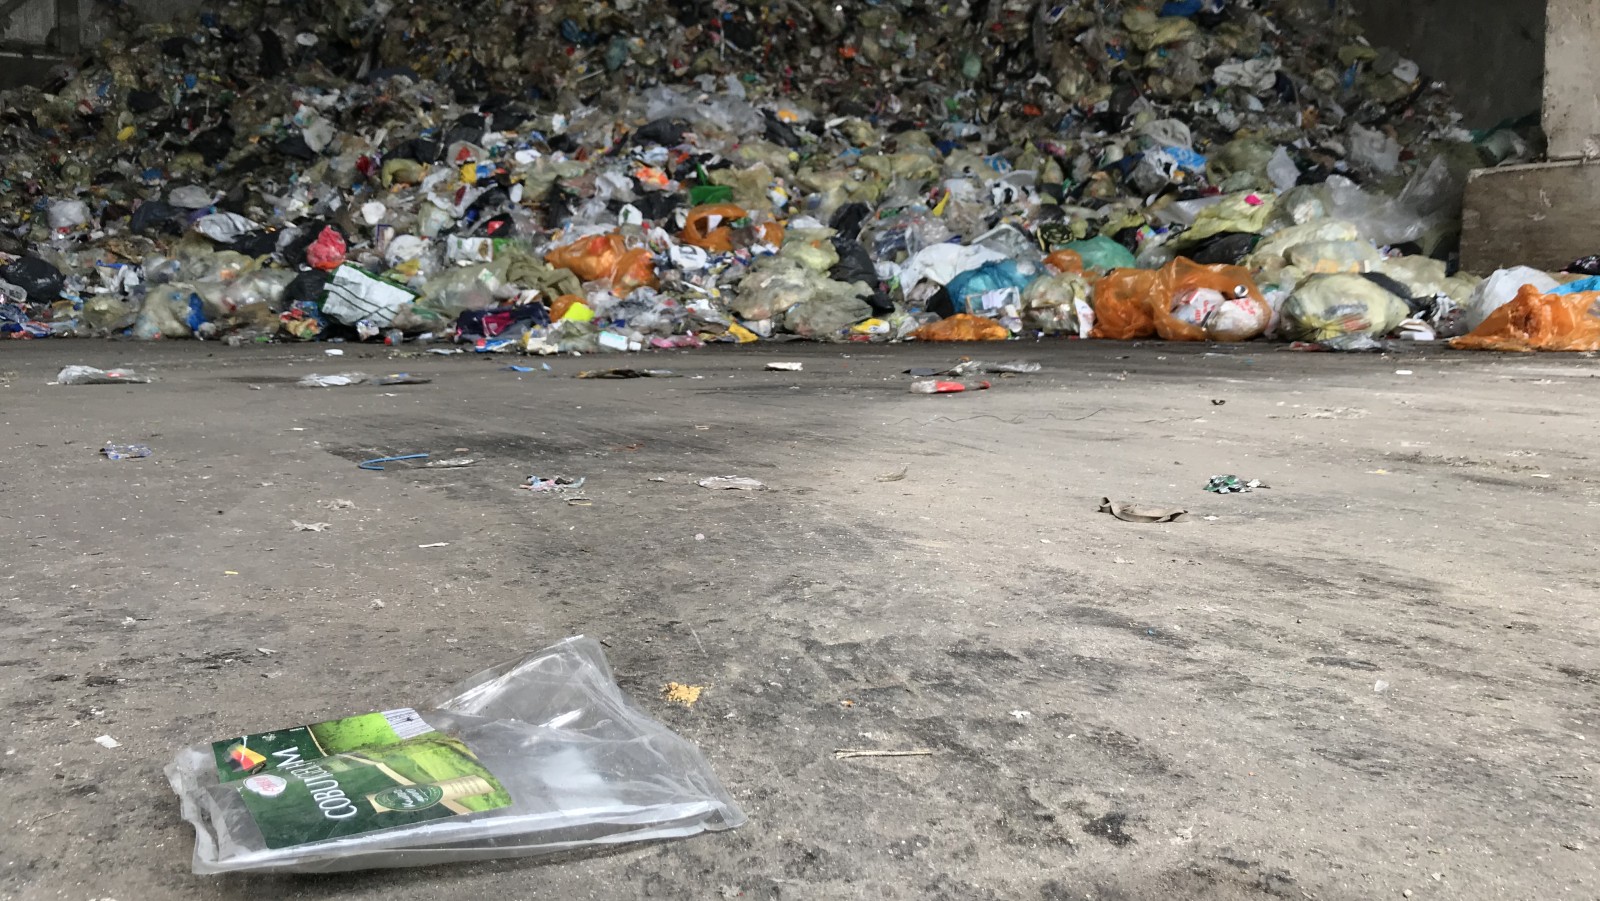 Aja stortbui Gelijk Gooise huishoudens moeten plastic afval nog zeker paar jaar zelf scheiden -  NH Nieuws